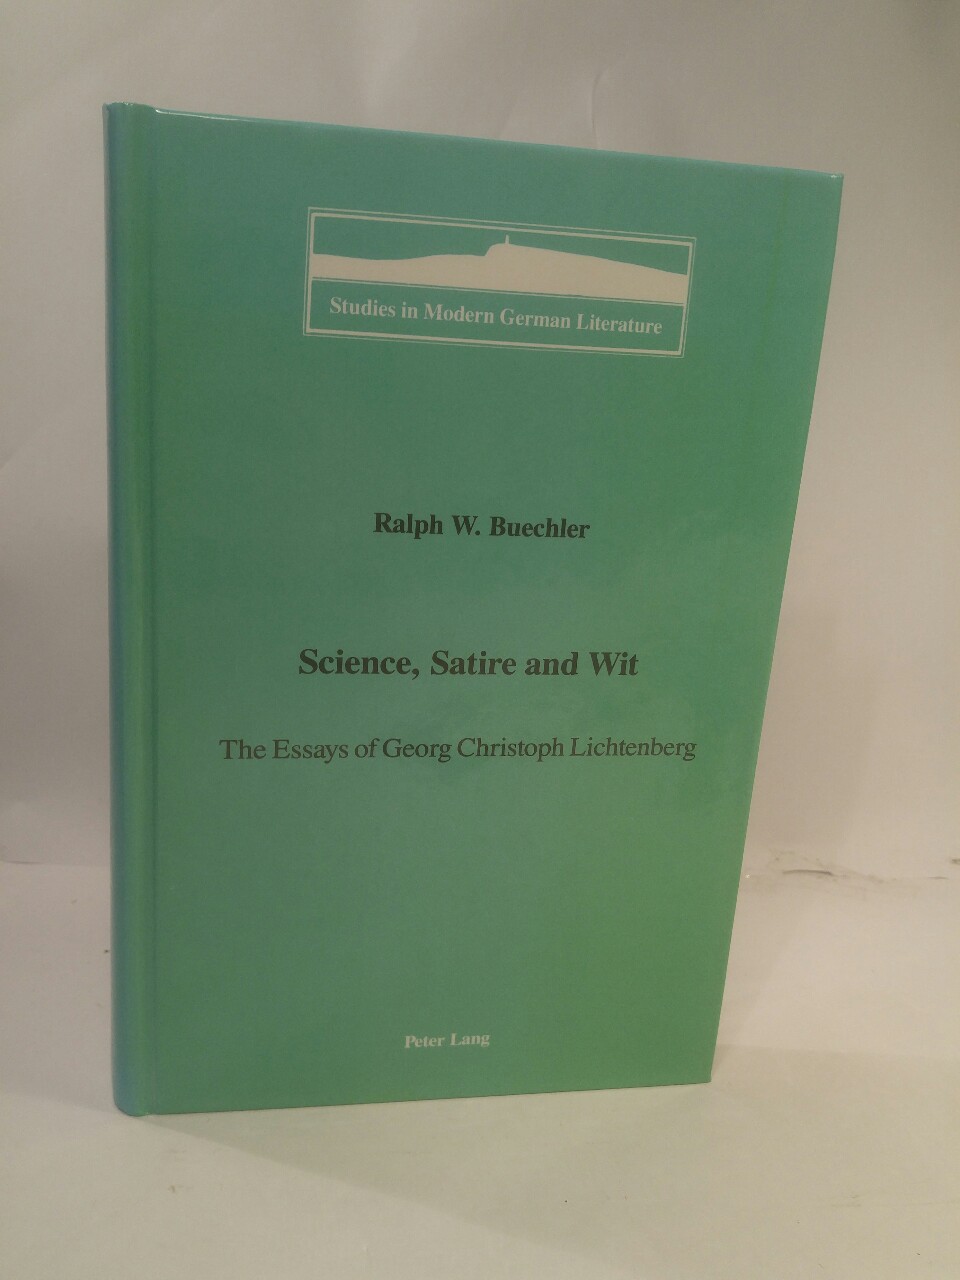 Science, Satire and Wit: The Essays of Georg Christoph Lichtenberg (Studies in Modern German Literature, Vol. 41). - Buechler, Ralph W.